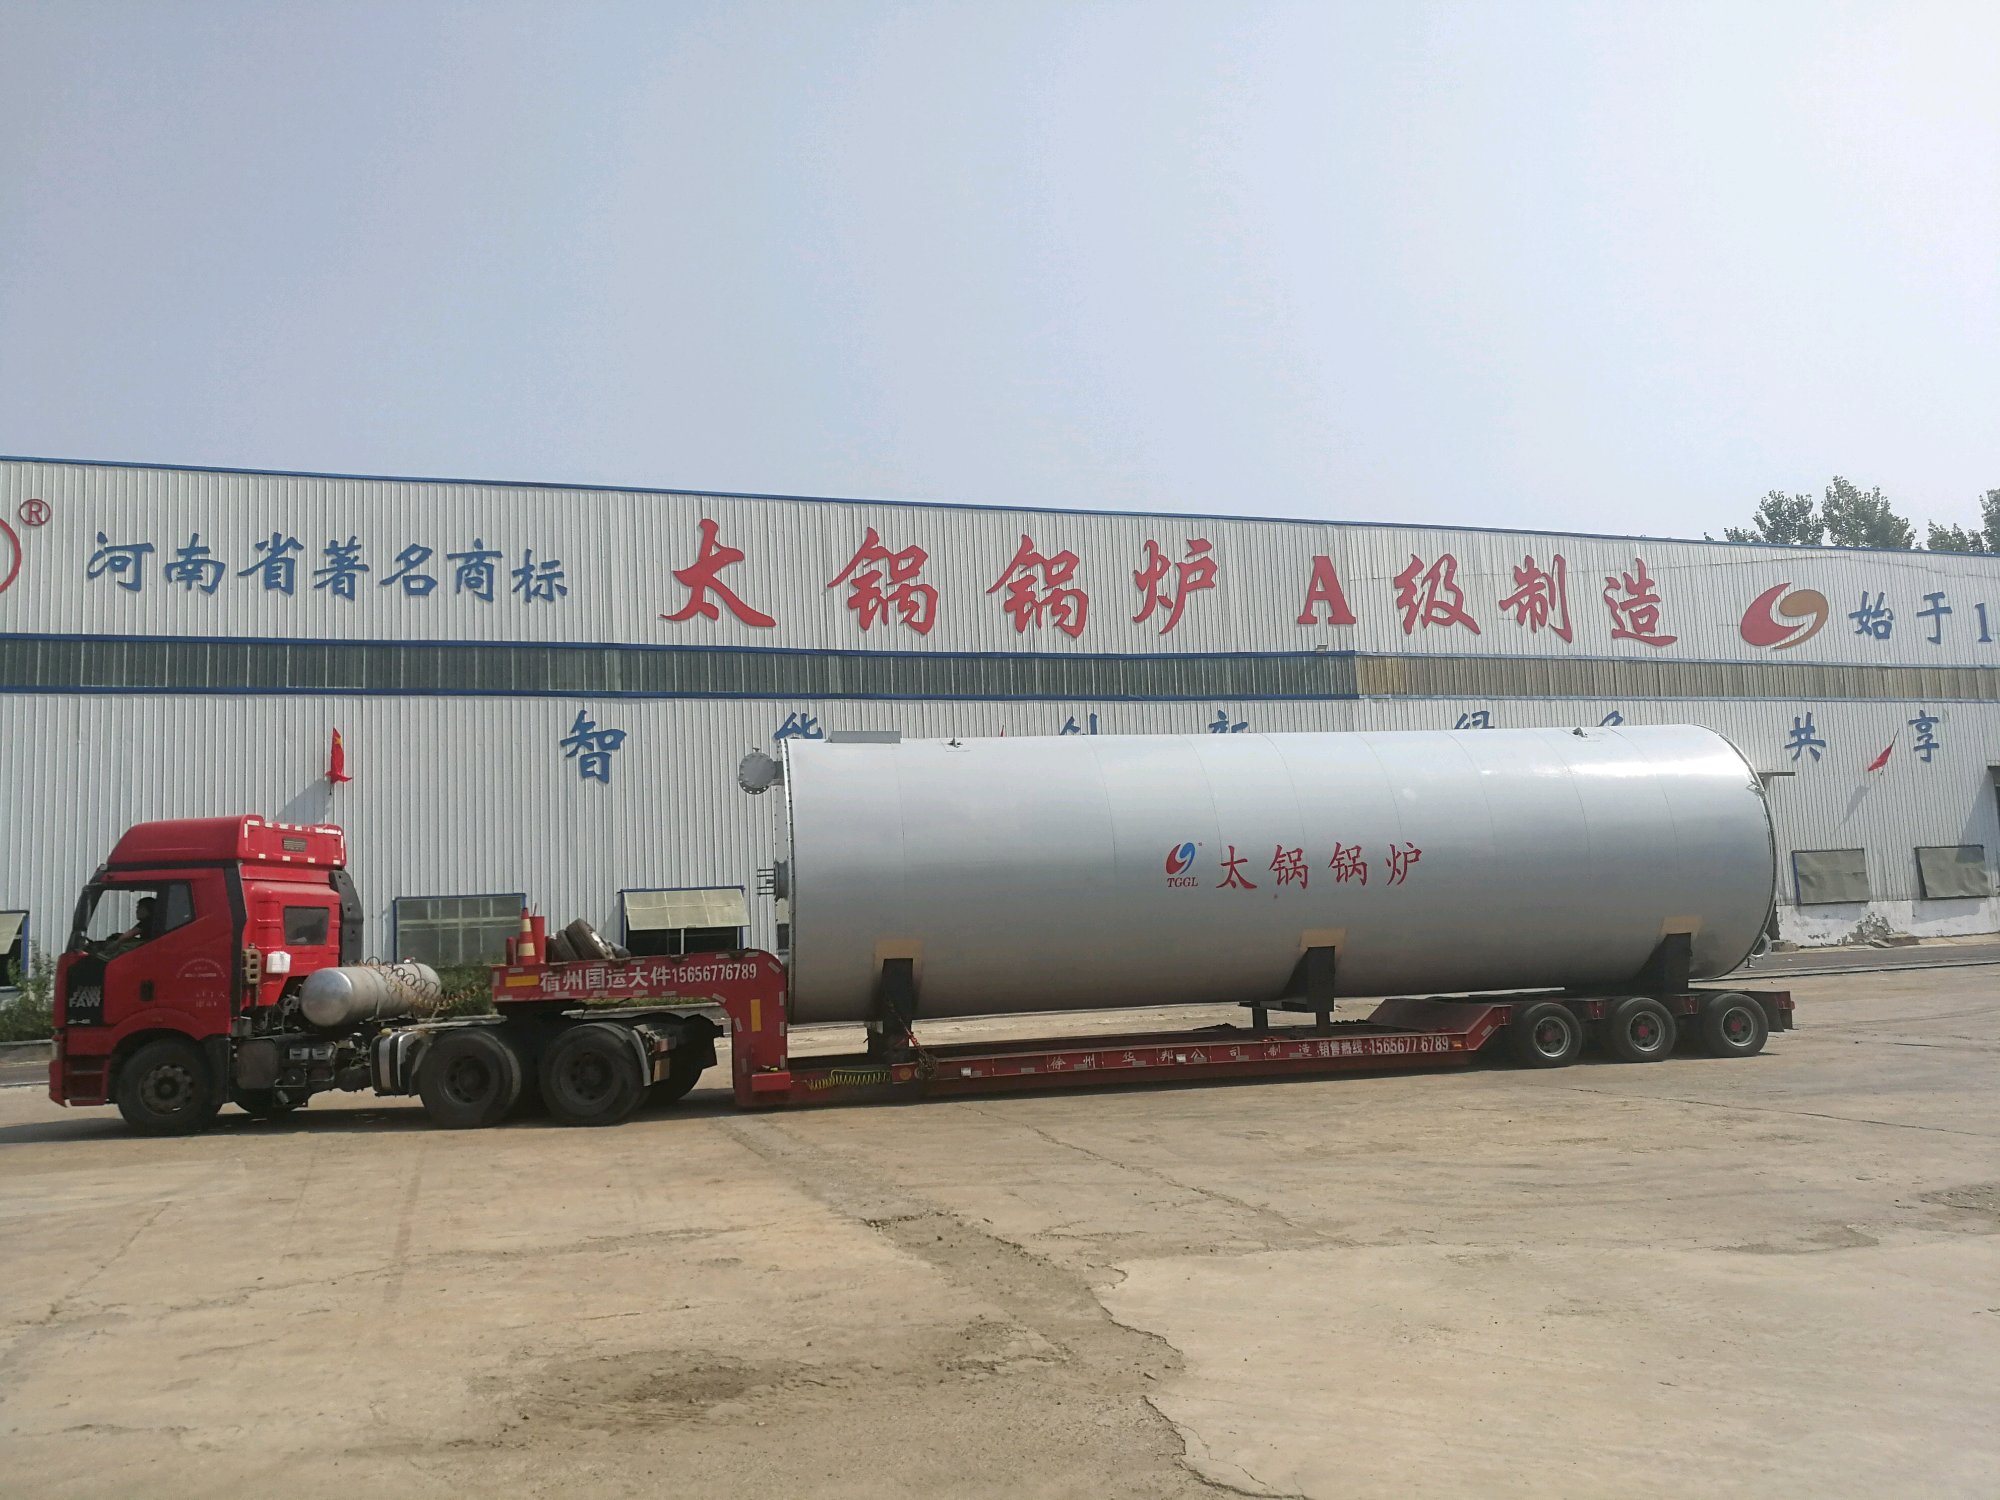 镇江太锅锅炉制造有限公司燃气锅炉和导热油炉发货中